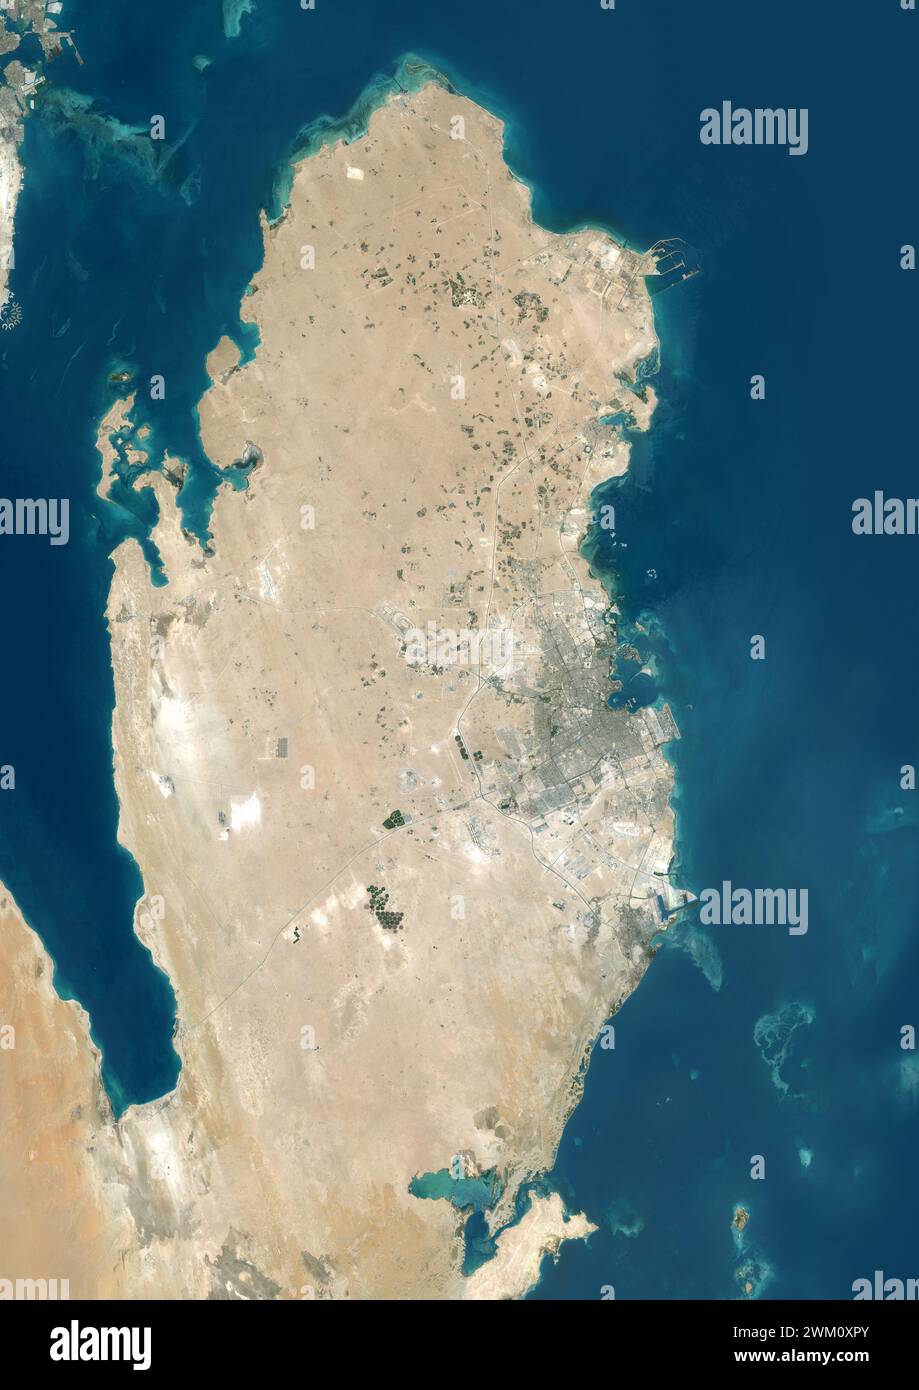 Immagine satellitare a colori del Qatar e dei paesi vicini. Foto Stock